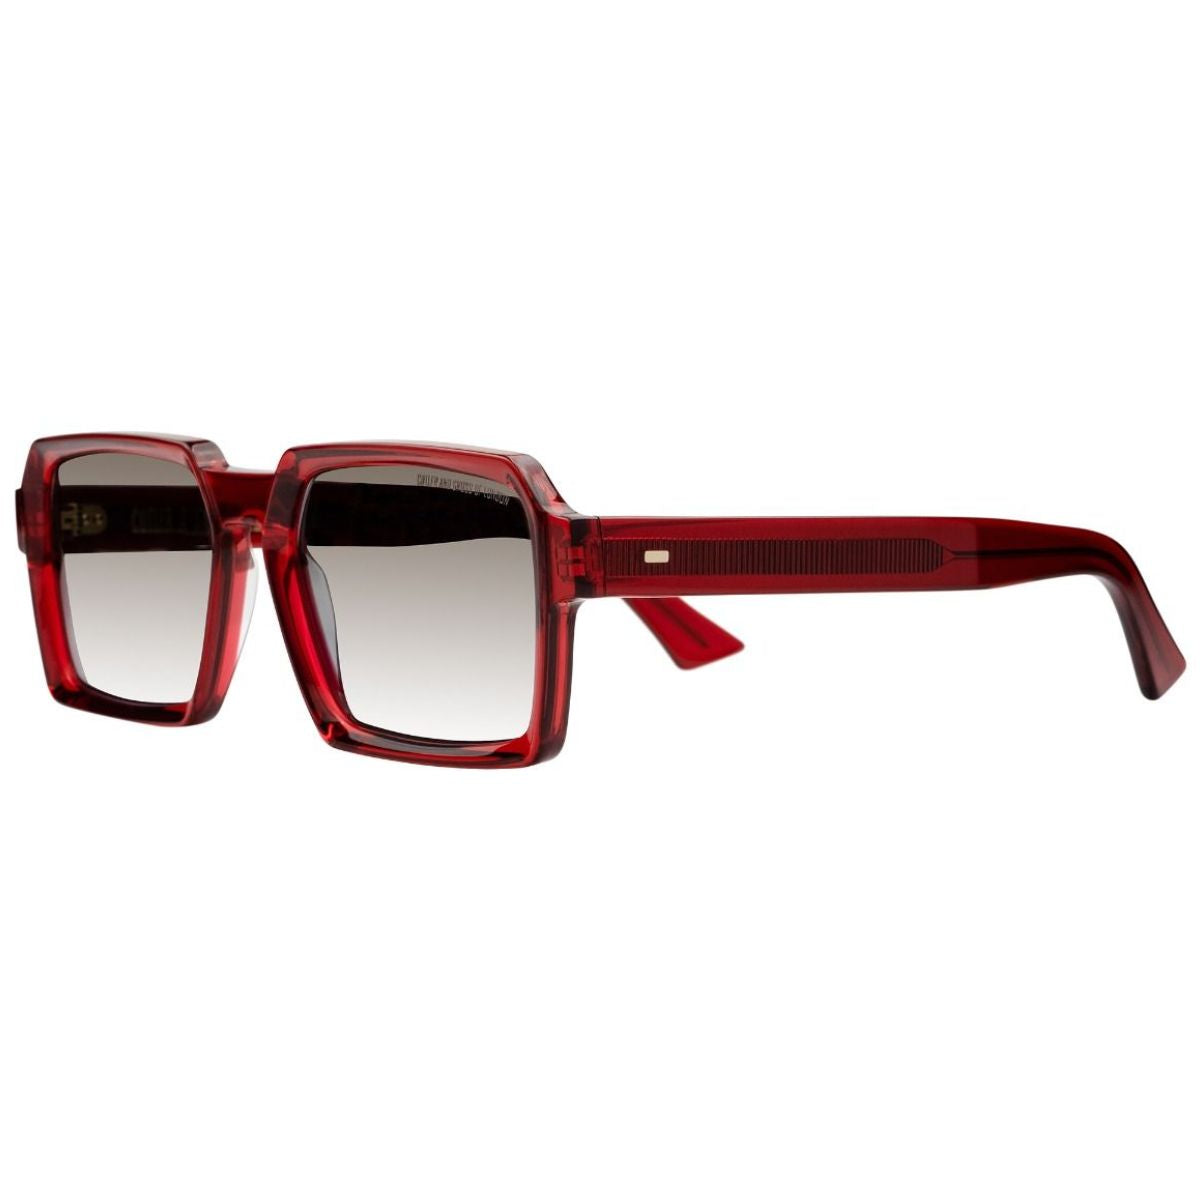 Cutler & Gross 13851385-02 Sunglasses